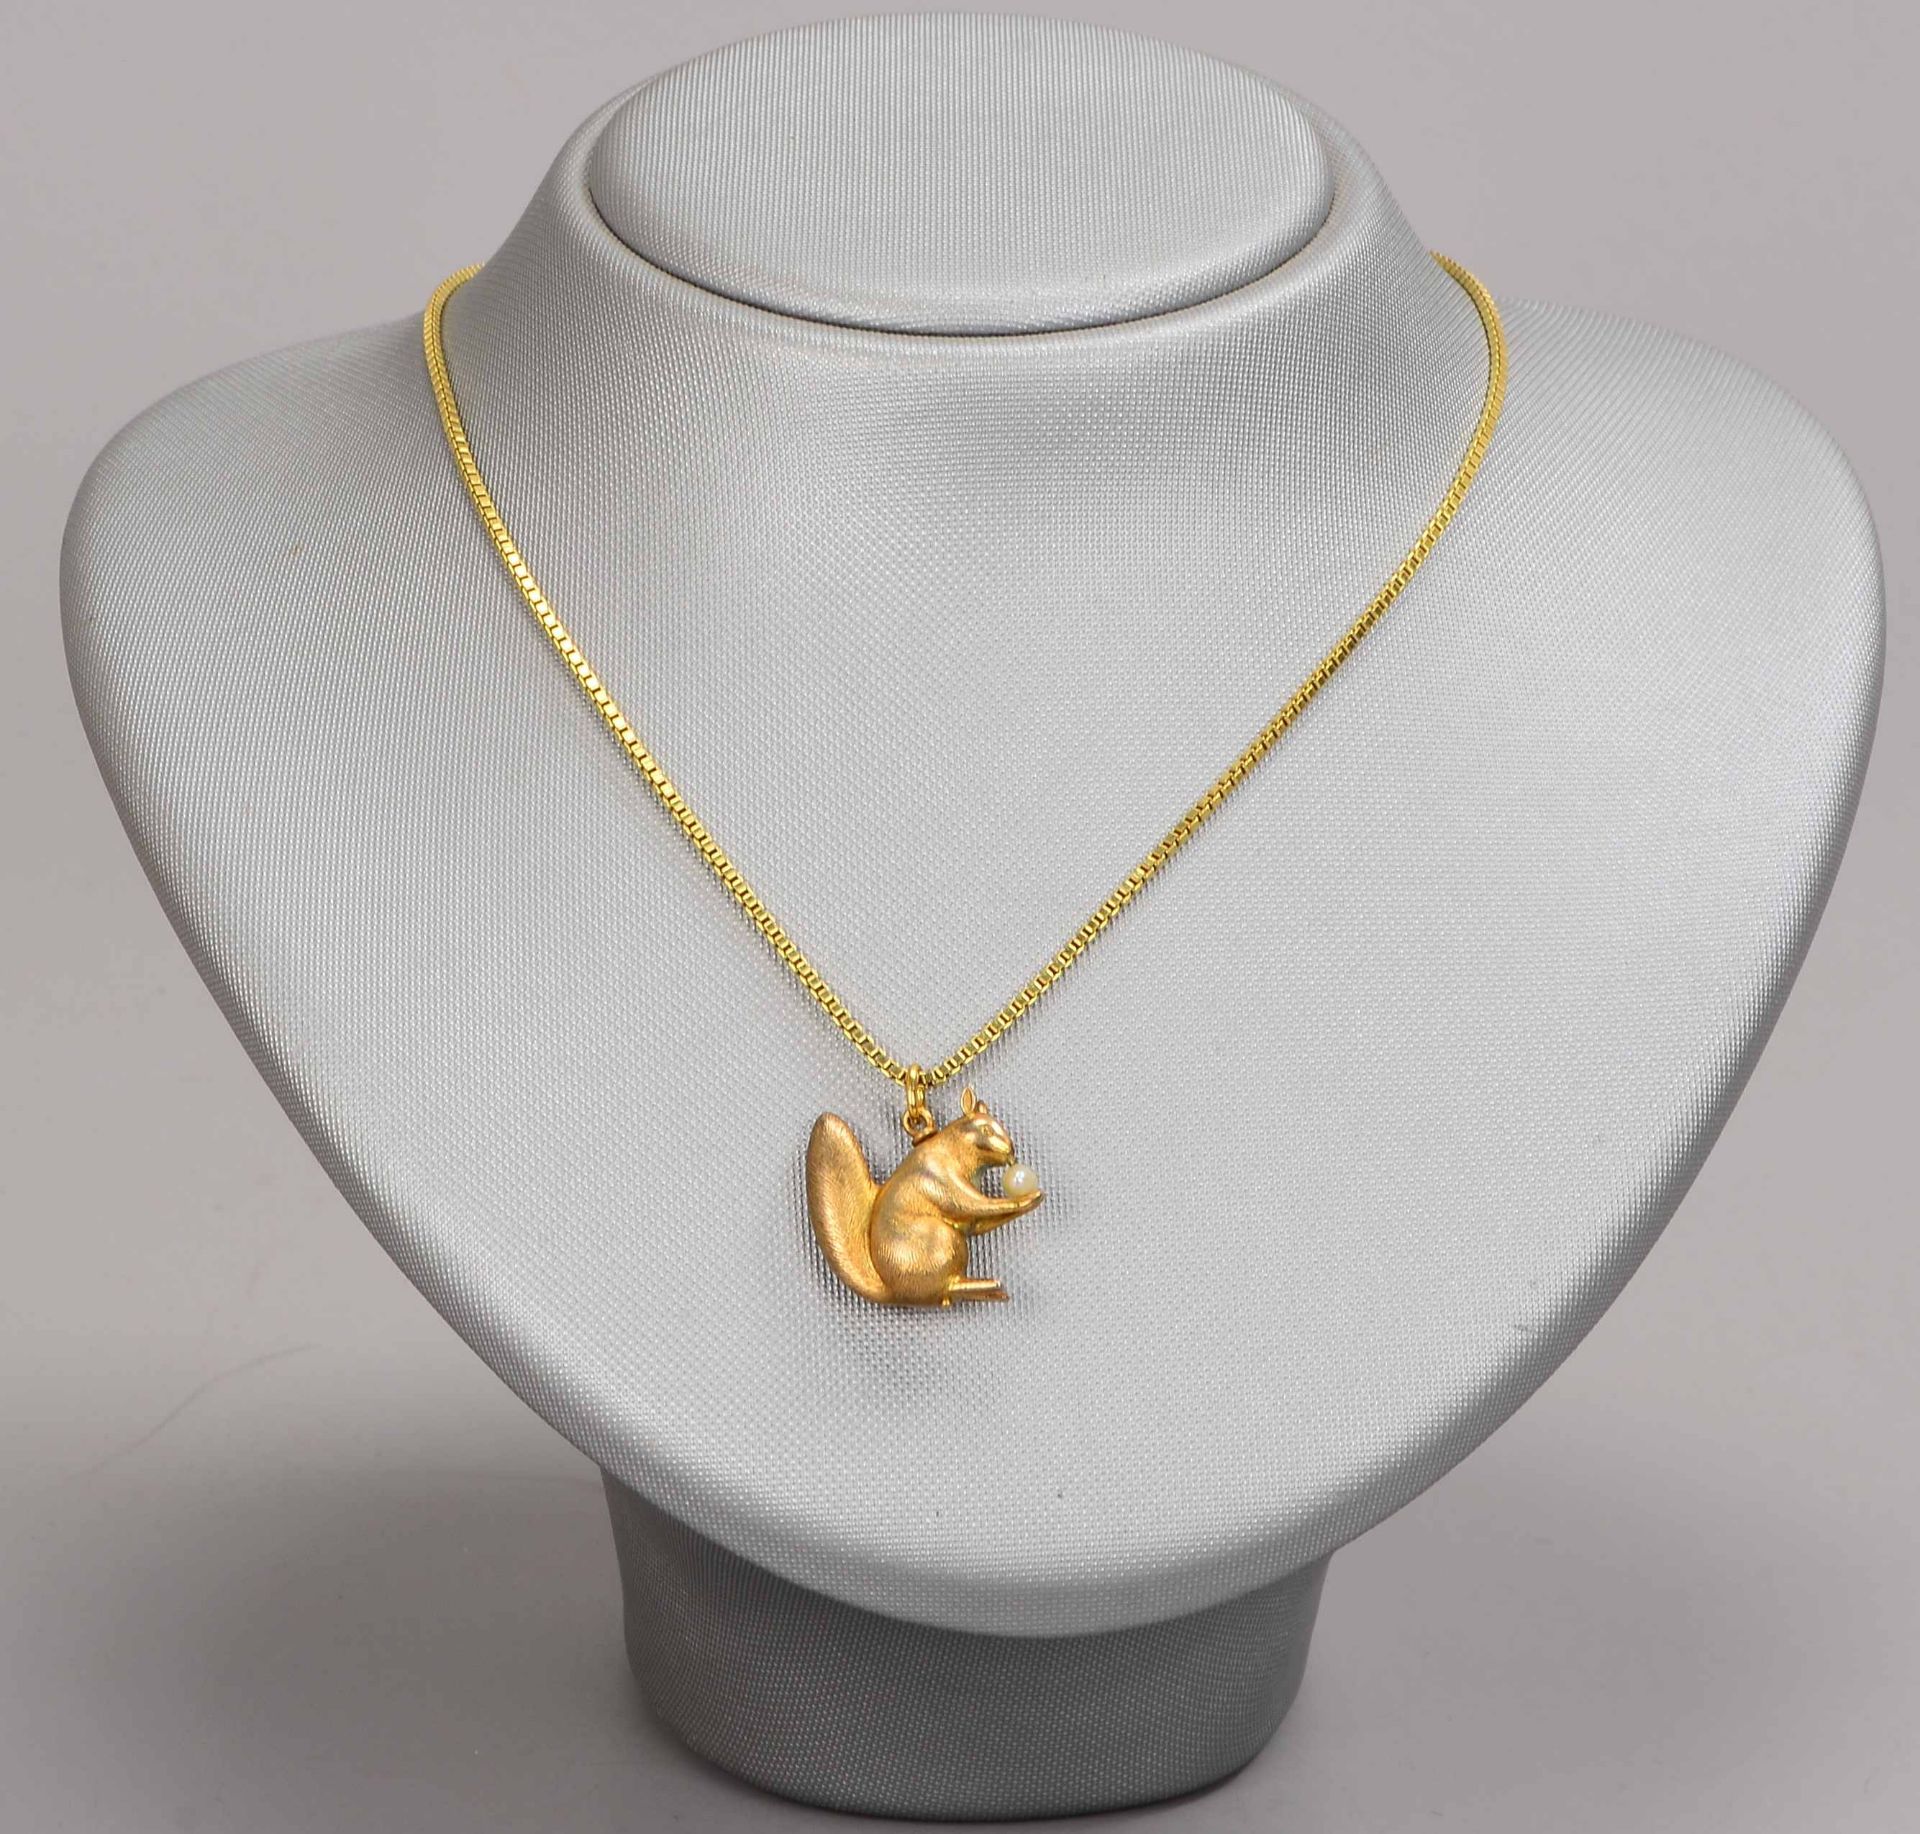 Halskette, 585 GG, mit figürlichem Anhänger, 'Eichhörnchen mit Flussperle', 925 Silber/vergoldet; Lä - Bild 2 aus 2